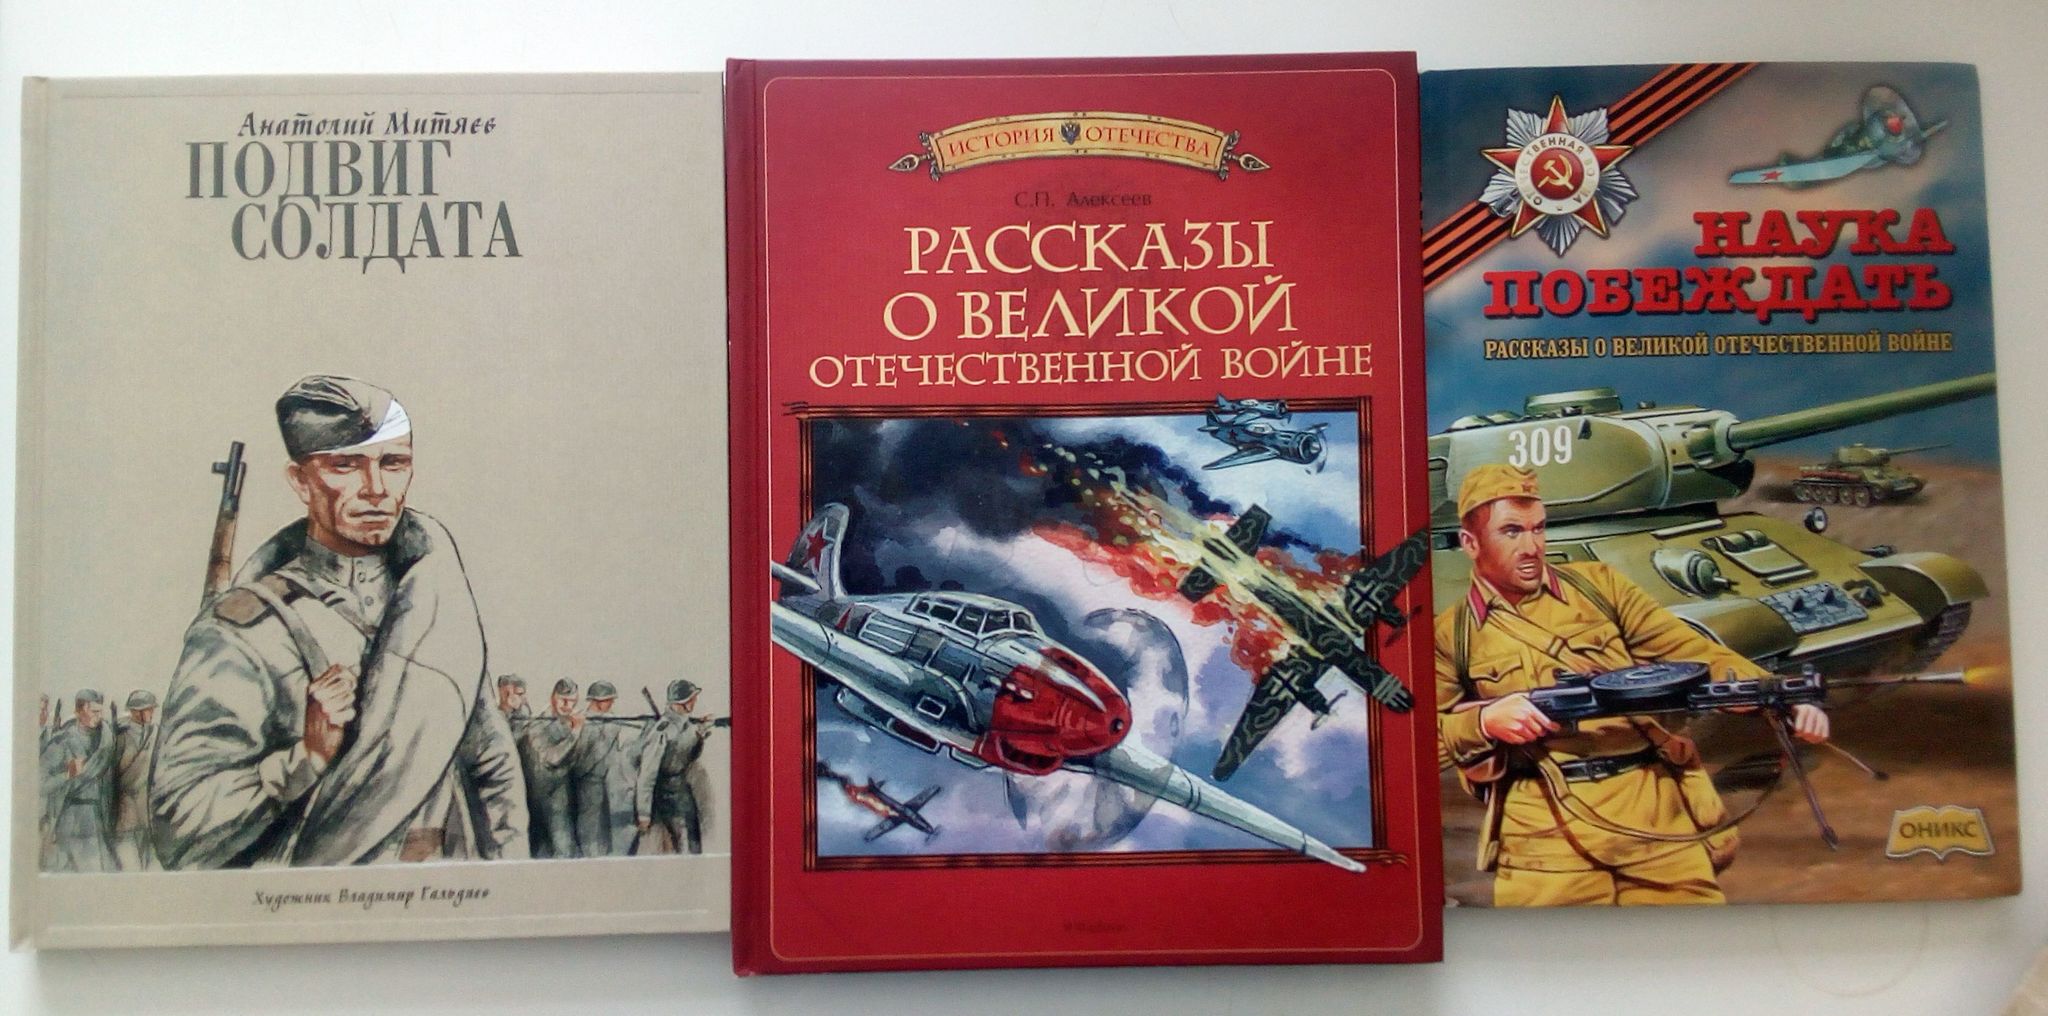 Алексеев рассказы о Великой Отечественной войне книга